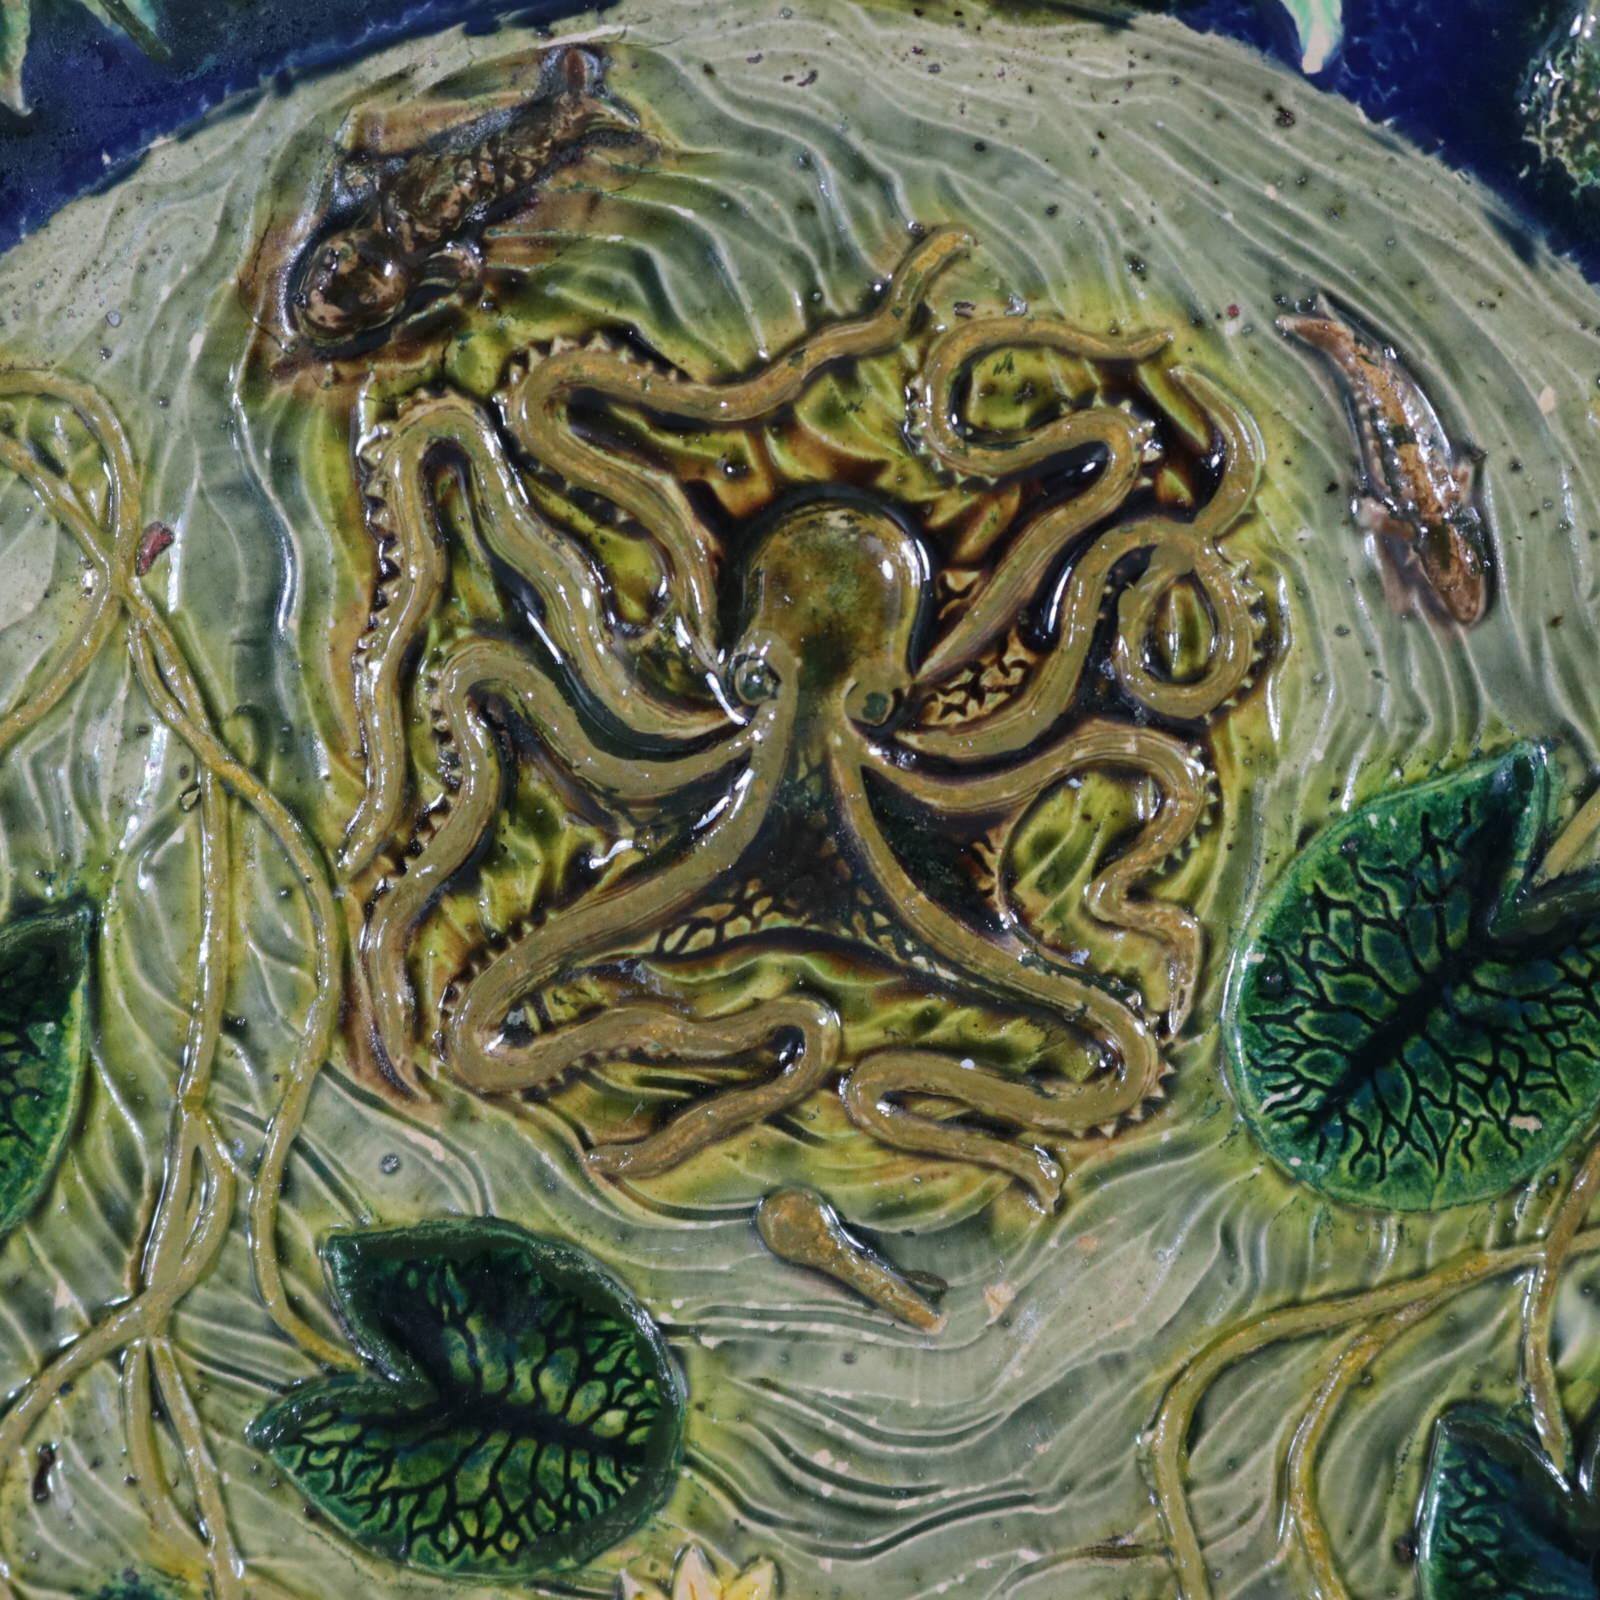 Nicht identifizierter französischer Majolikateller aus Palissy, der einen Oktopus, Schildkröten, Fische, Frösche, Eidechsen, Schlangen, Fische und Lilien zeigt. Färbung: blau, grün, grau, sind vorherrschend. Mit eingeprägter Herstellermarke 